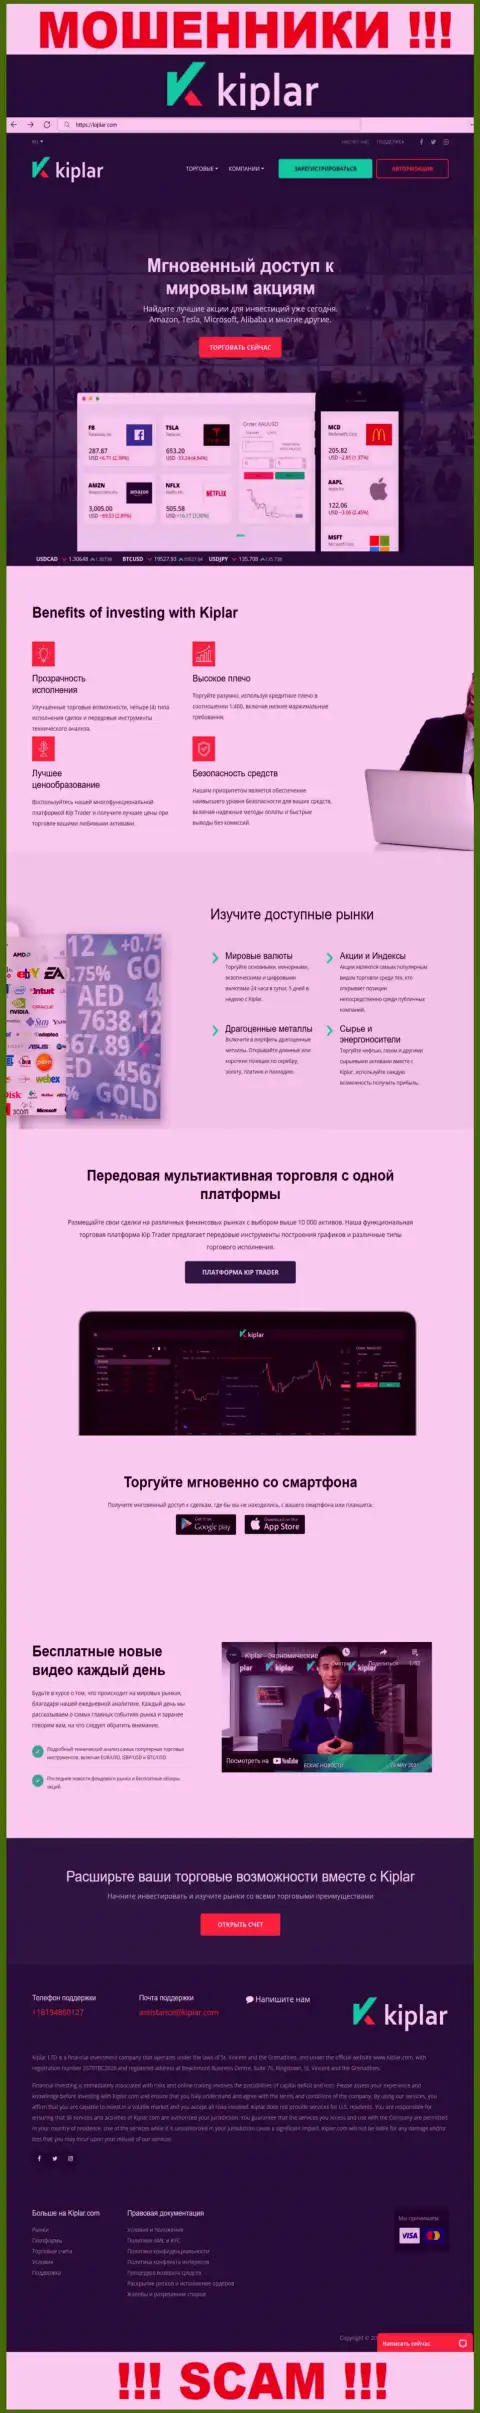 Киплар Ком - это официальный веб-портал интернет-воров Kiplar